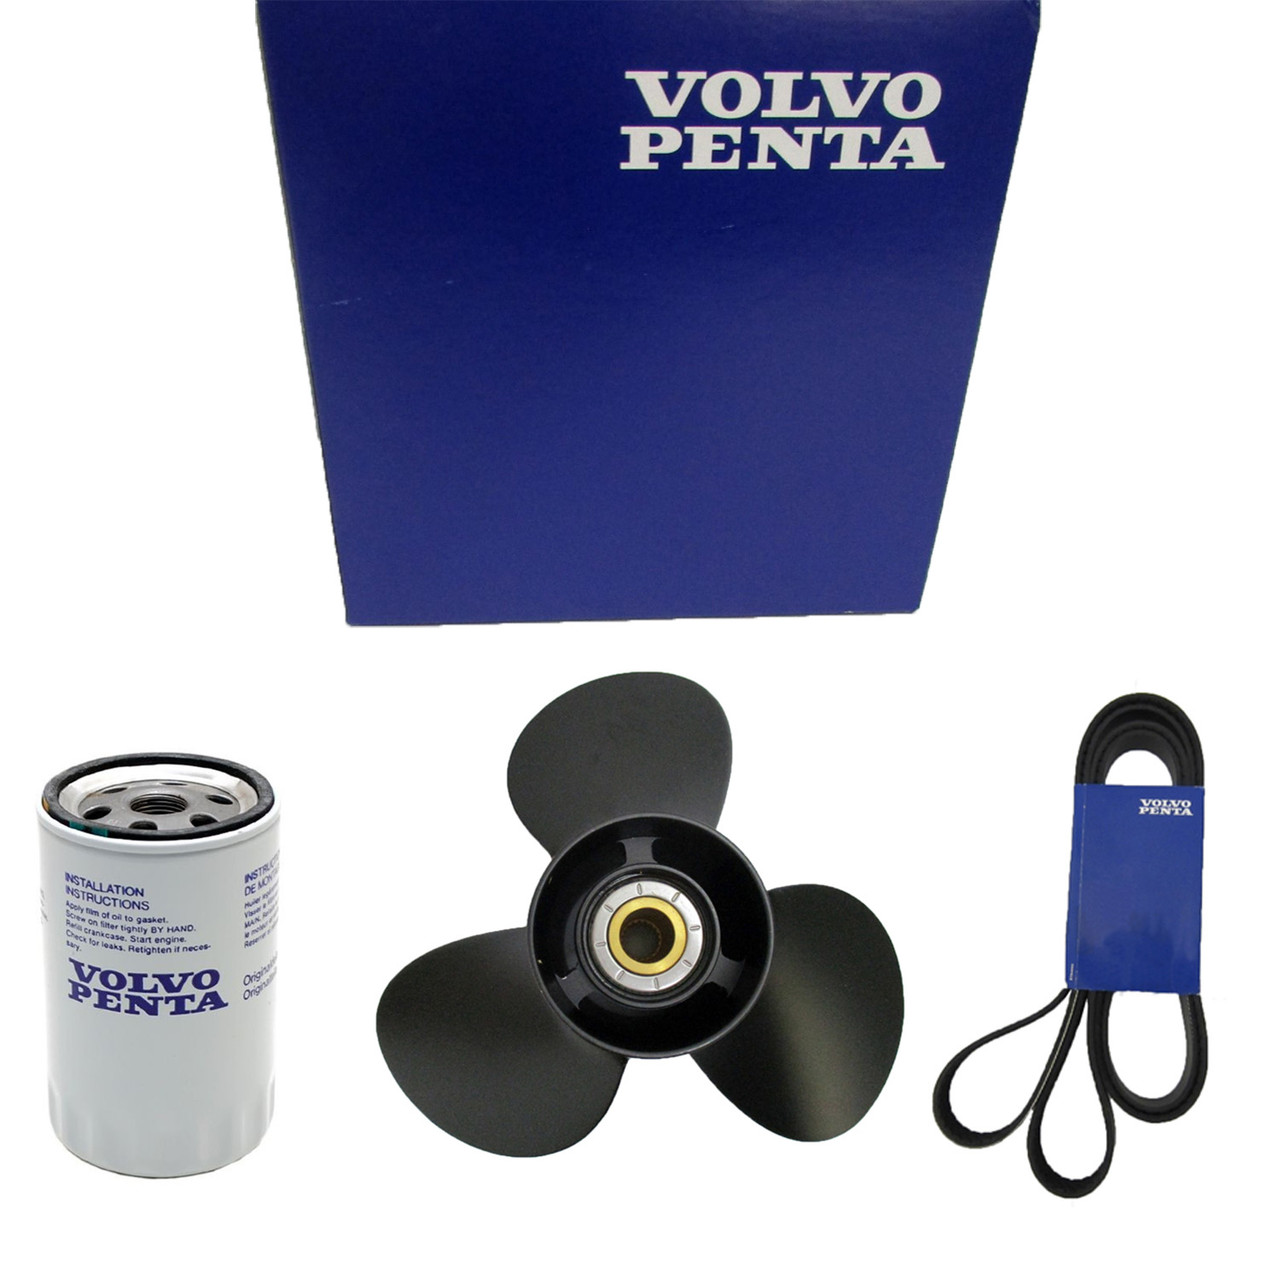 Volvo Penta New OEM Oil Filter, 21707134